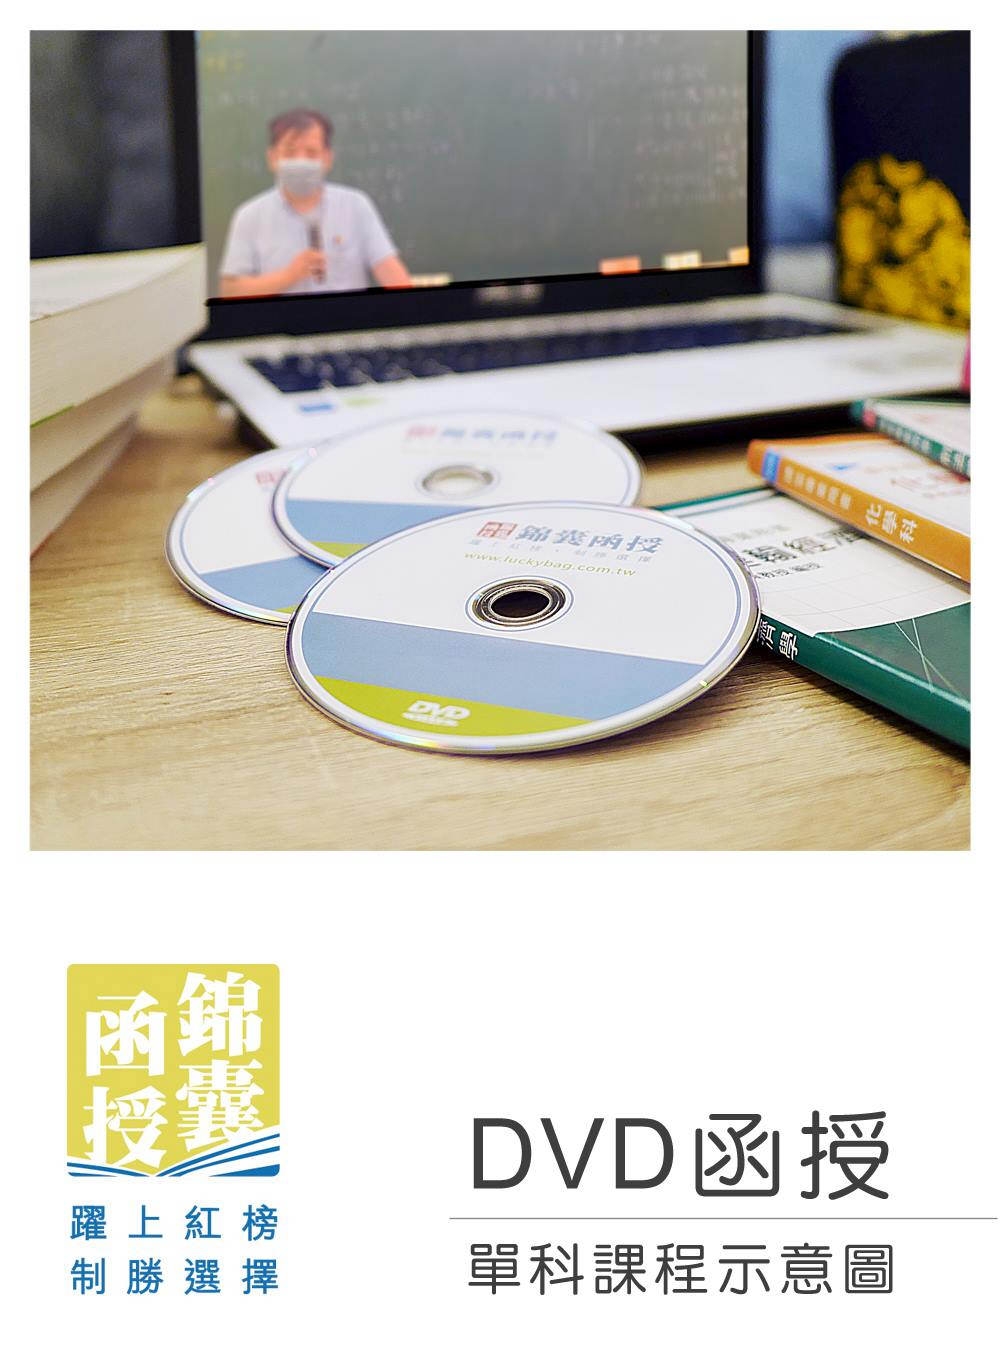 【DVD函授】火災學-單科課程(111版)